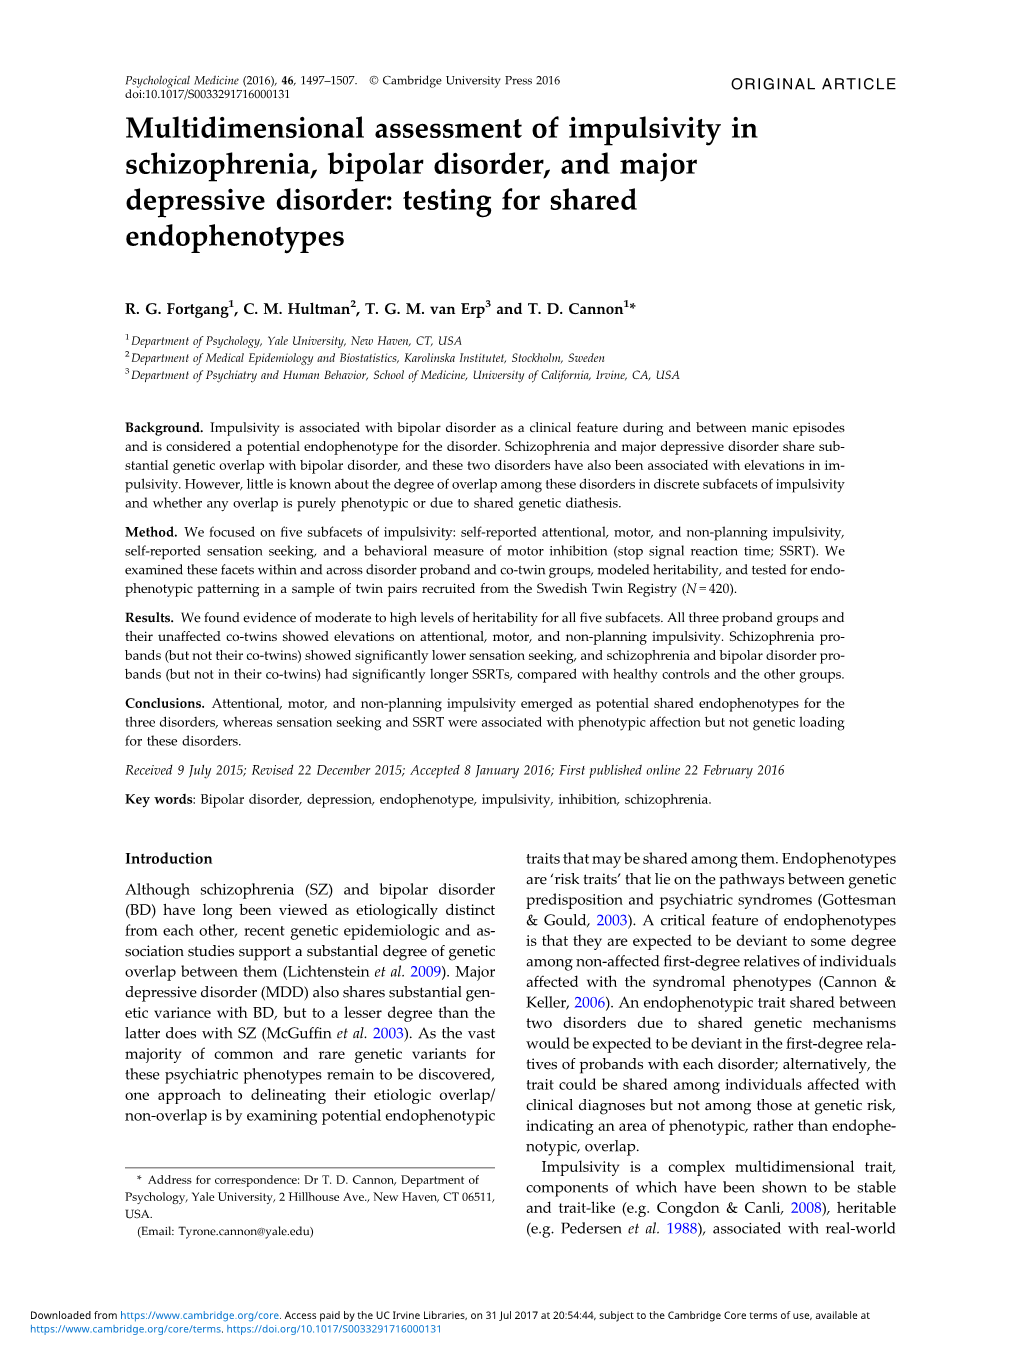 Multidimensional Assessment of Impulsivity in Schizophrenia, Bipolar Disorder, and Major Depressive Disorder: Testing for Shared Endophenotypes